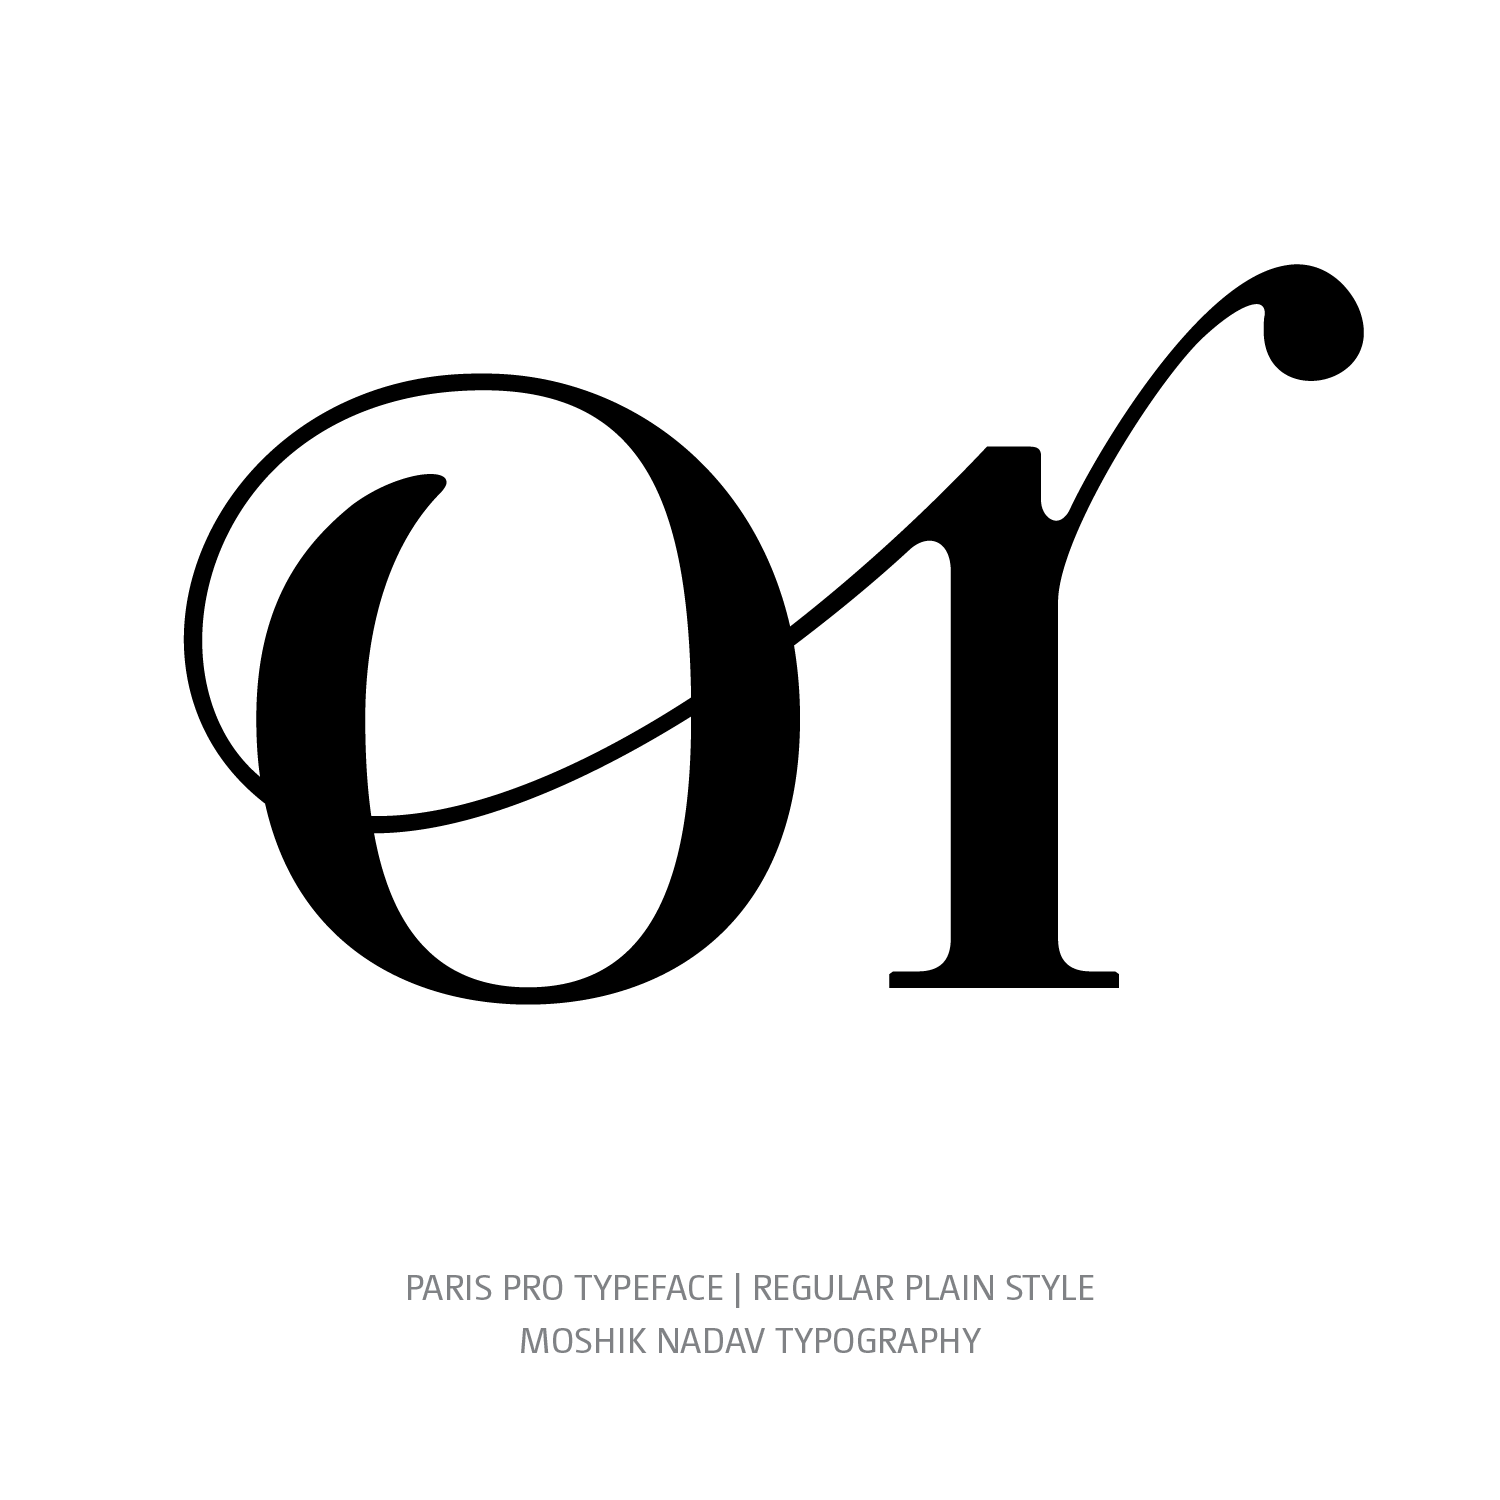 Paris Pro Typeface Regular OR ligature